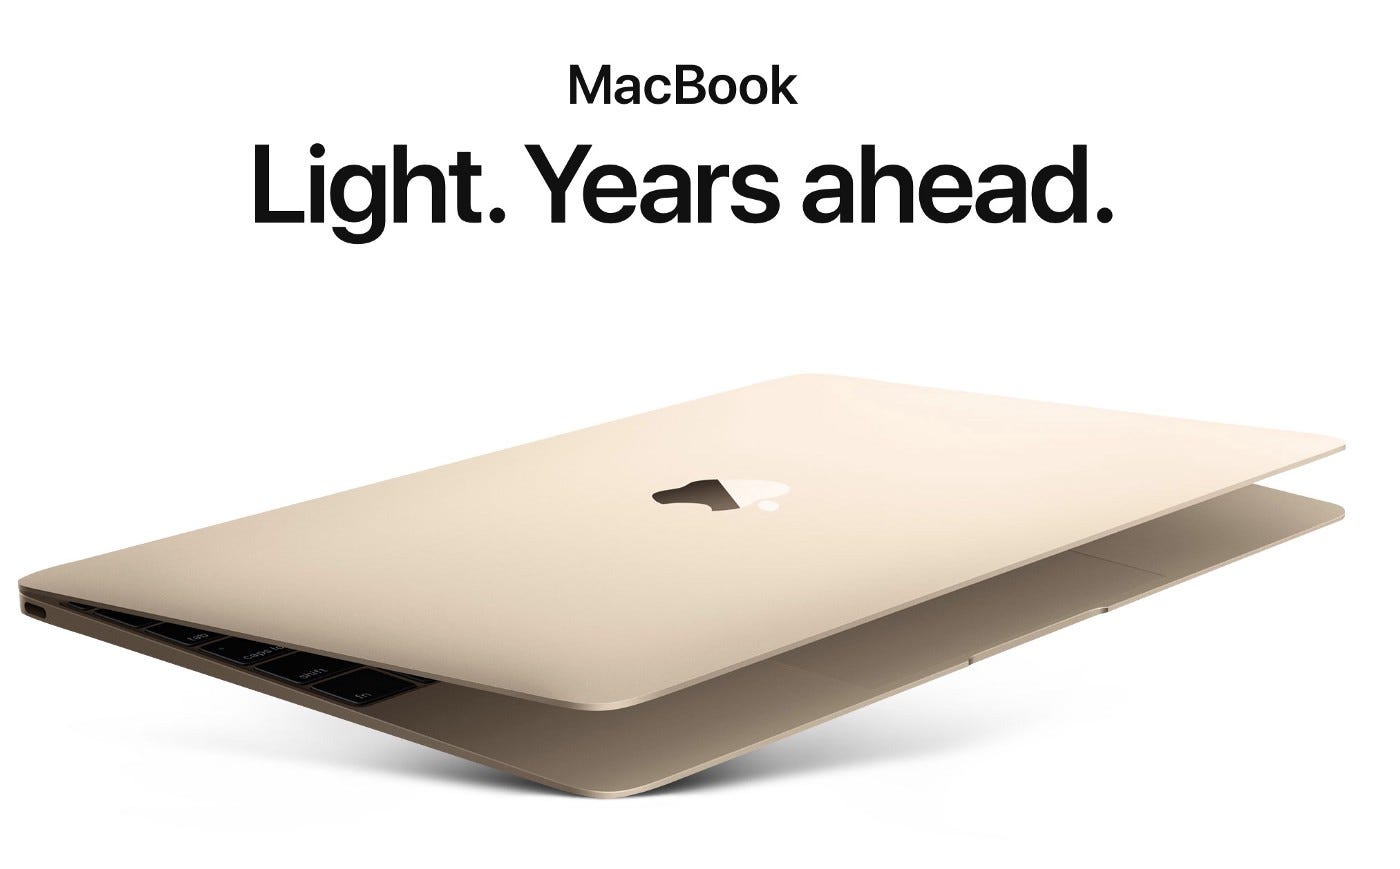 A MacBook ad.